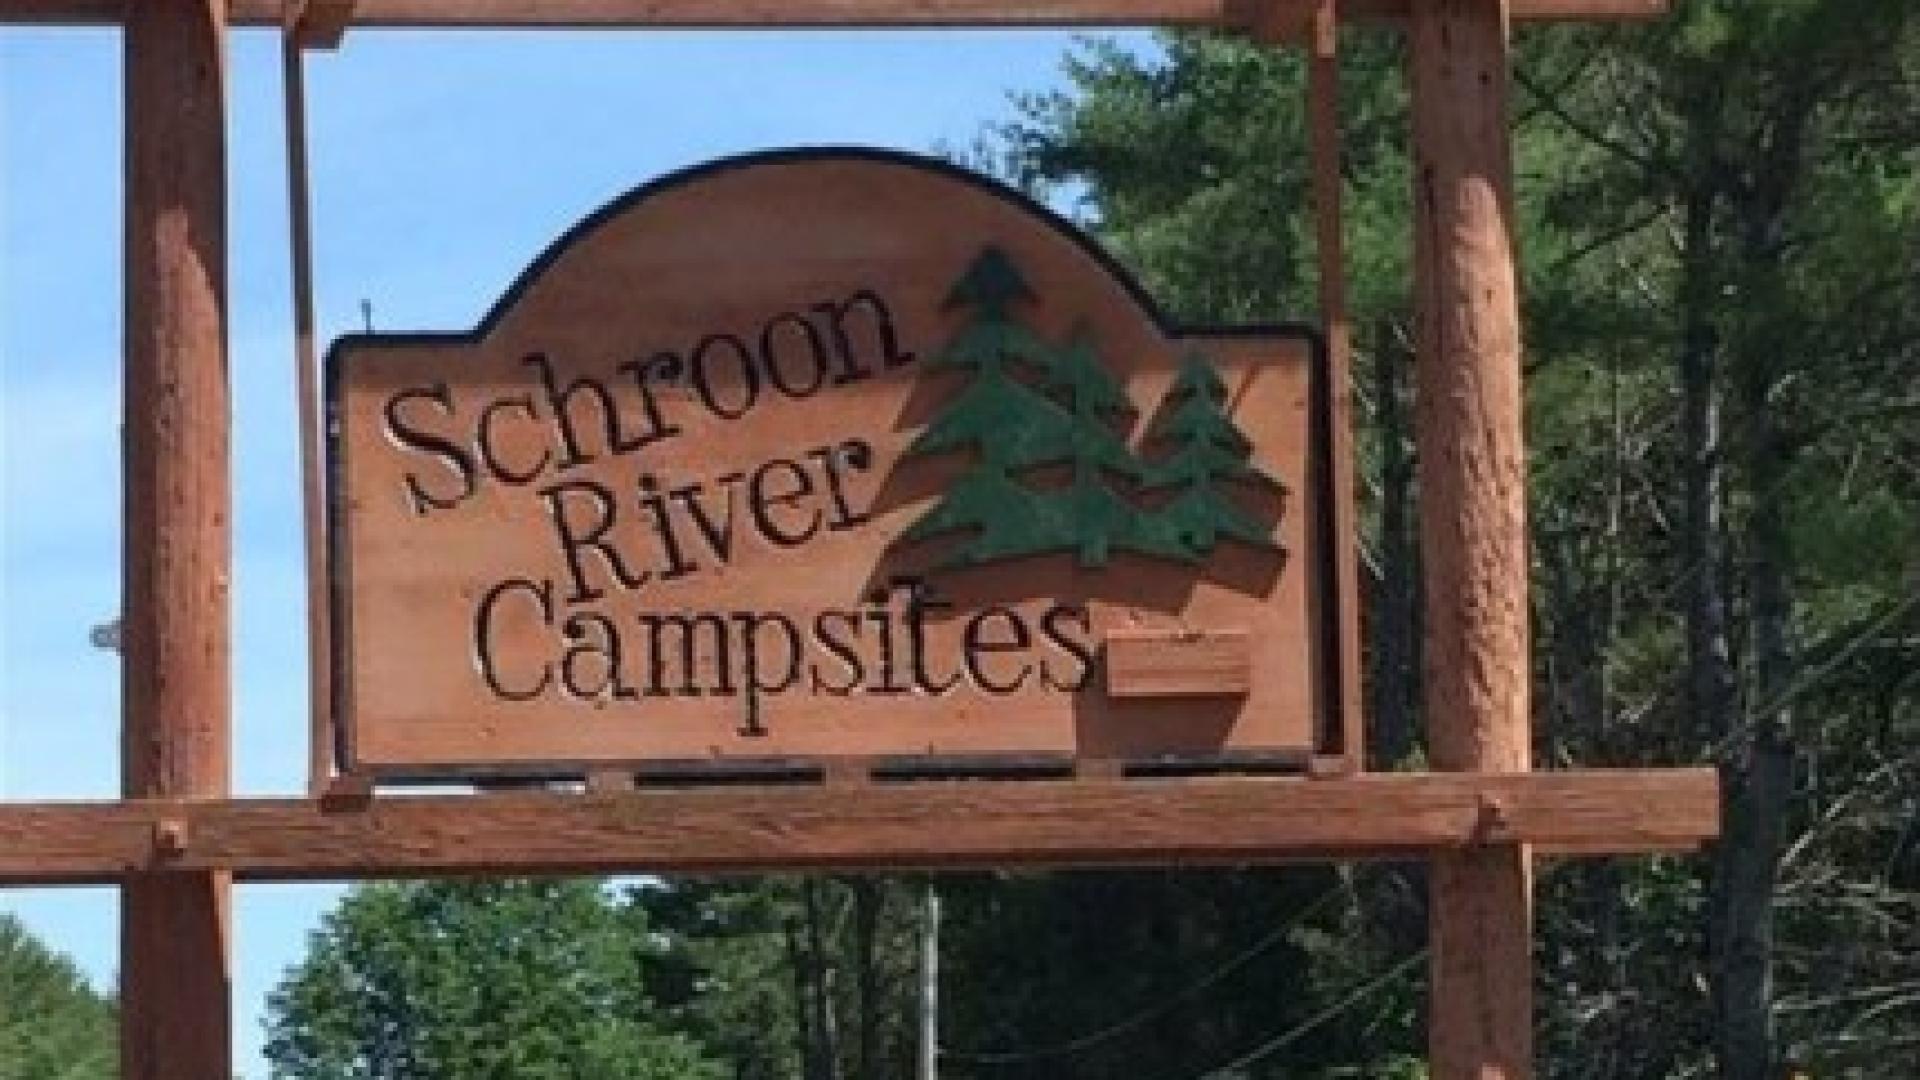 Schroon River Campsites